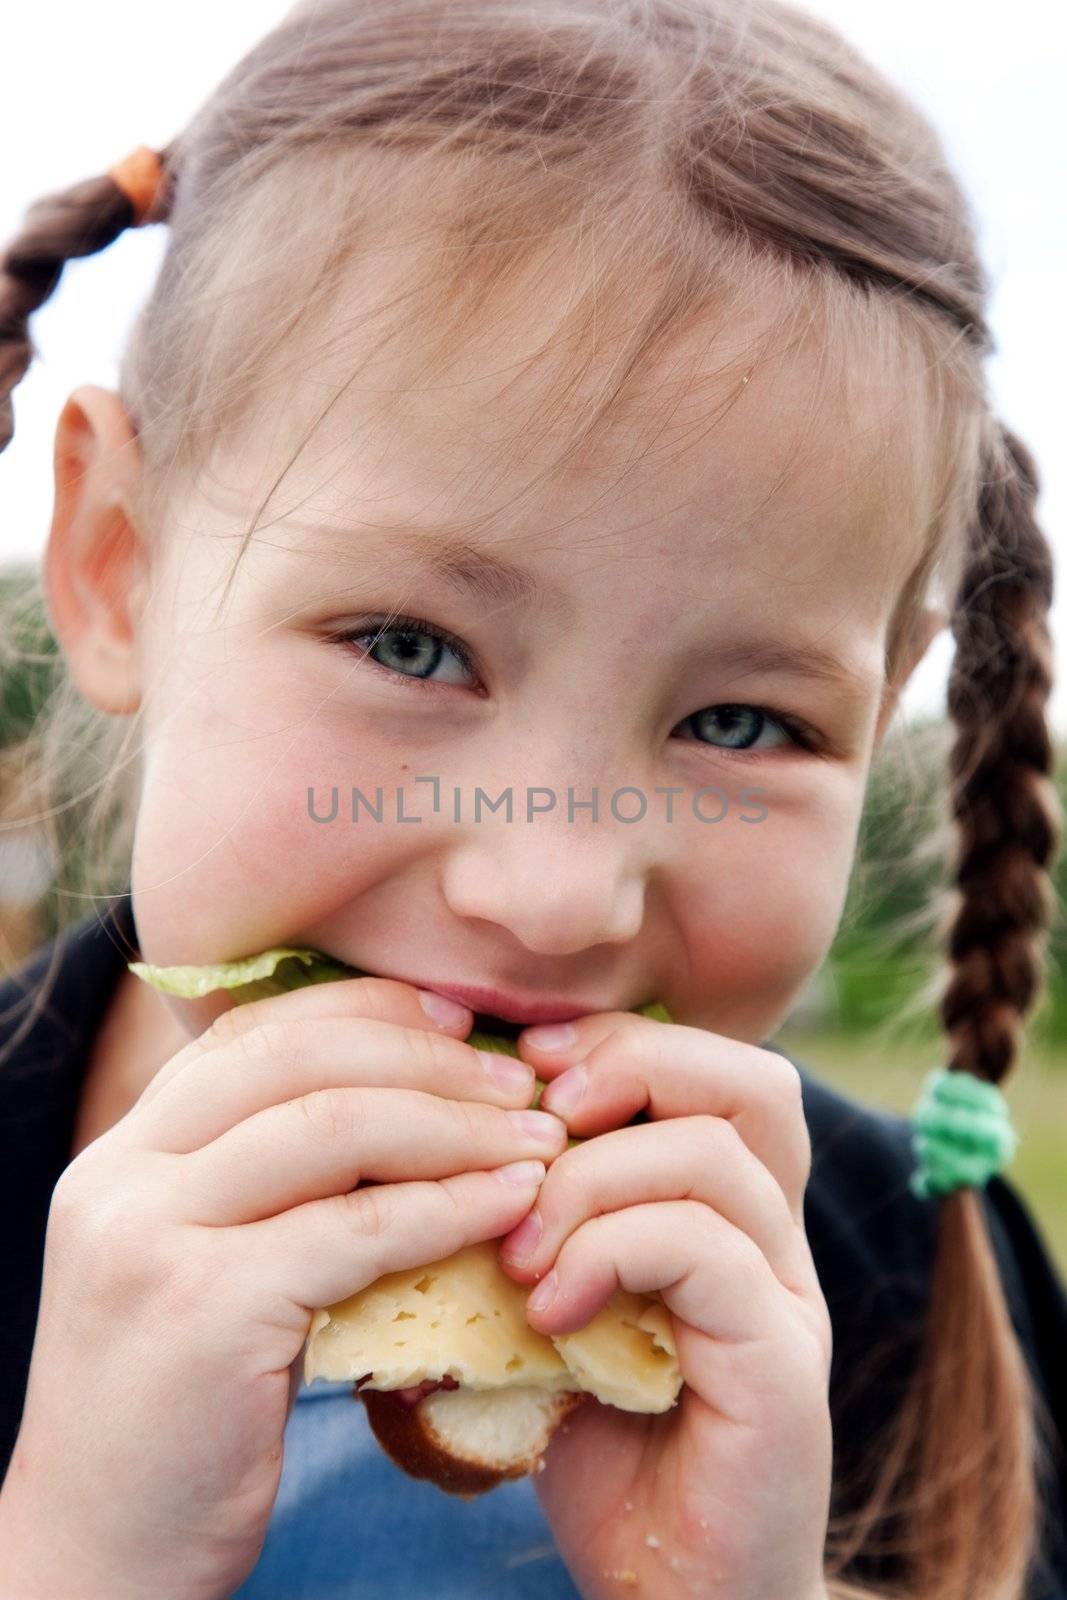 Little girl eats a sandwich on fresh air
